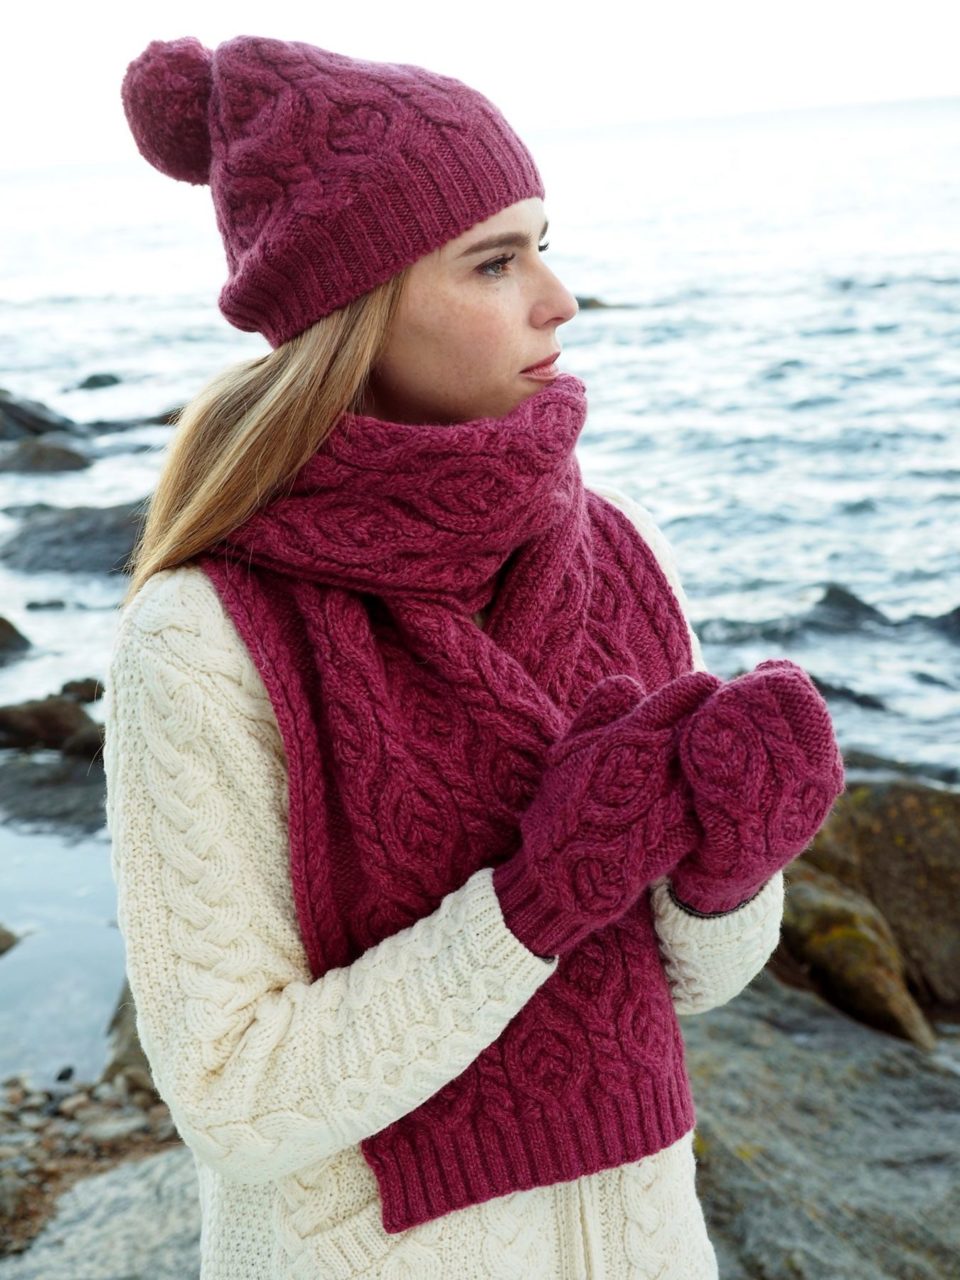 Echarpe, bonnet et gants en laine mérinos fabriqués en France